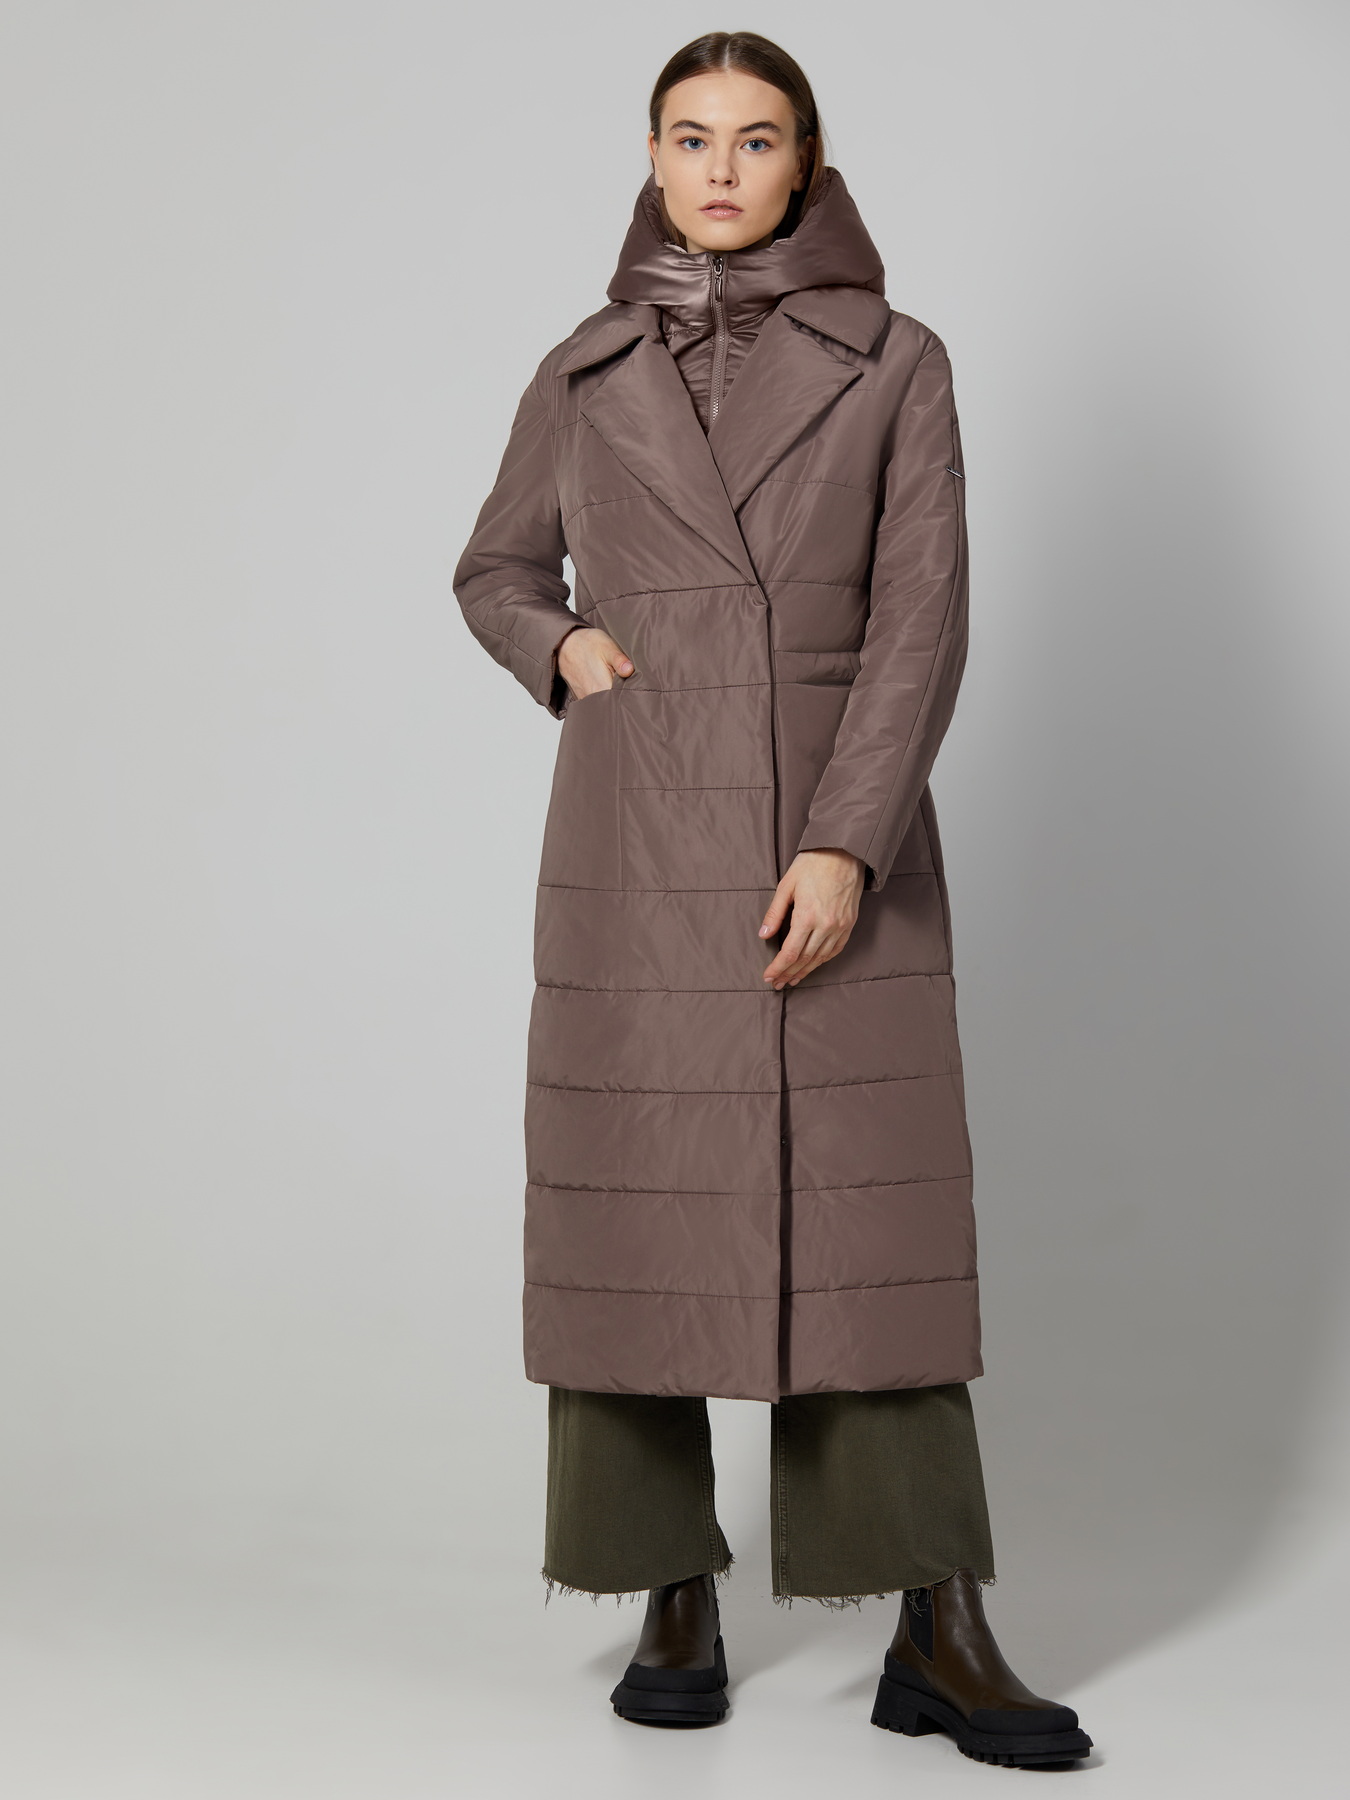 Утеплённое пальто с английским воротником, съёмной манишкой и боковыми шлицами на кнопках